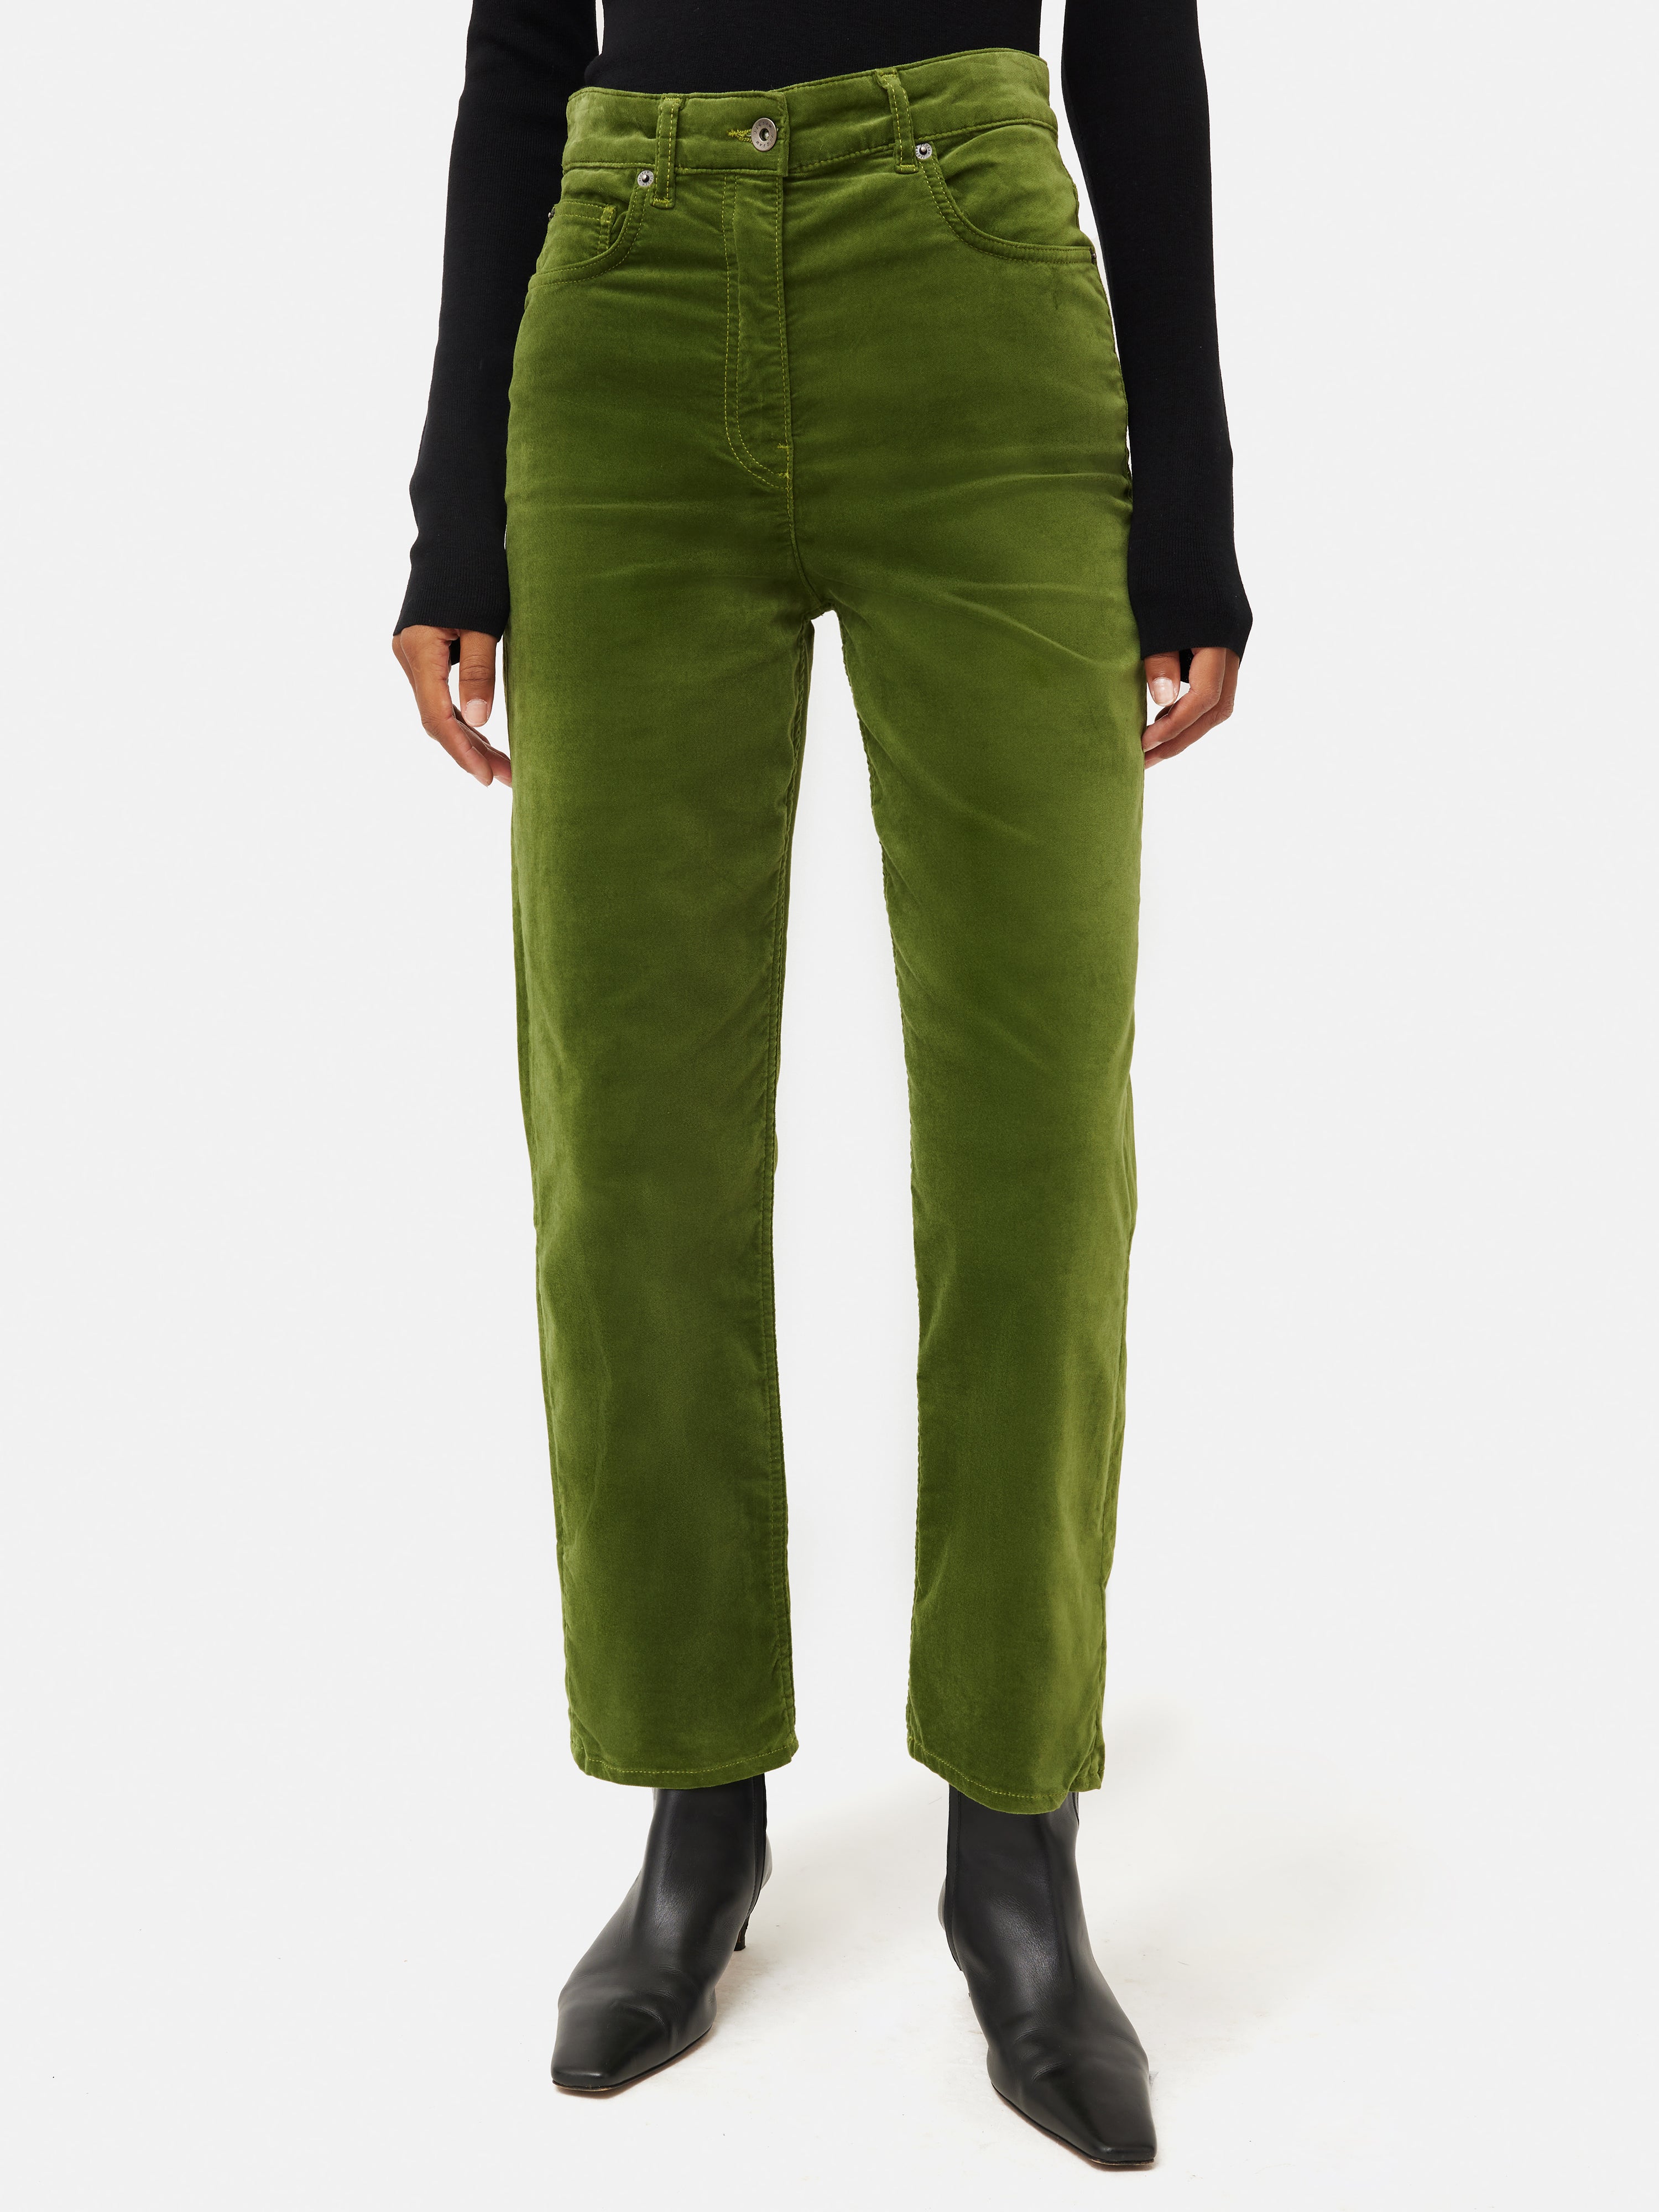 Two Ways: Green Velvet Jeans